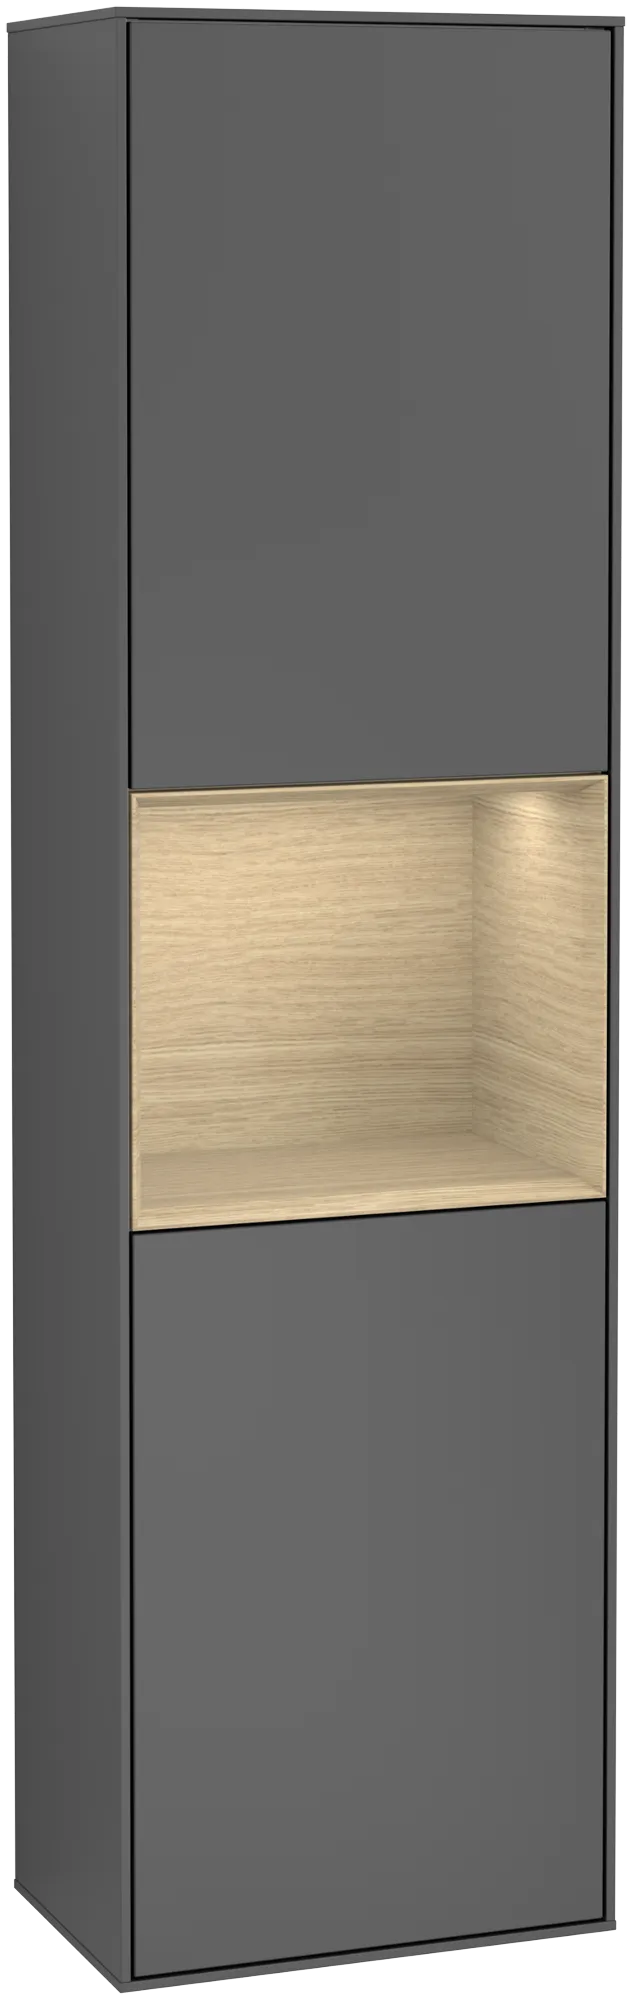 Bild von VILLEROY BOCH Finion Hochschrank, mit Beleuchtung, 2 Türen, 418 x 1516 x 270 mm, Anthracite Matt Lacquer / Oak Veneer #G470PCGK